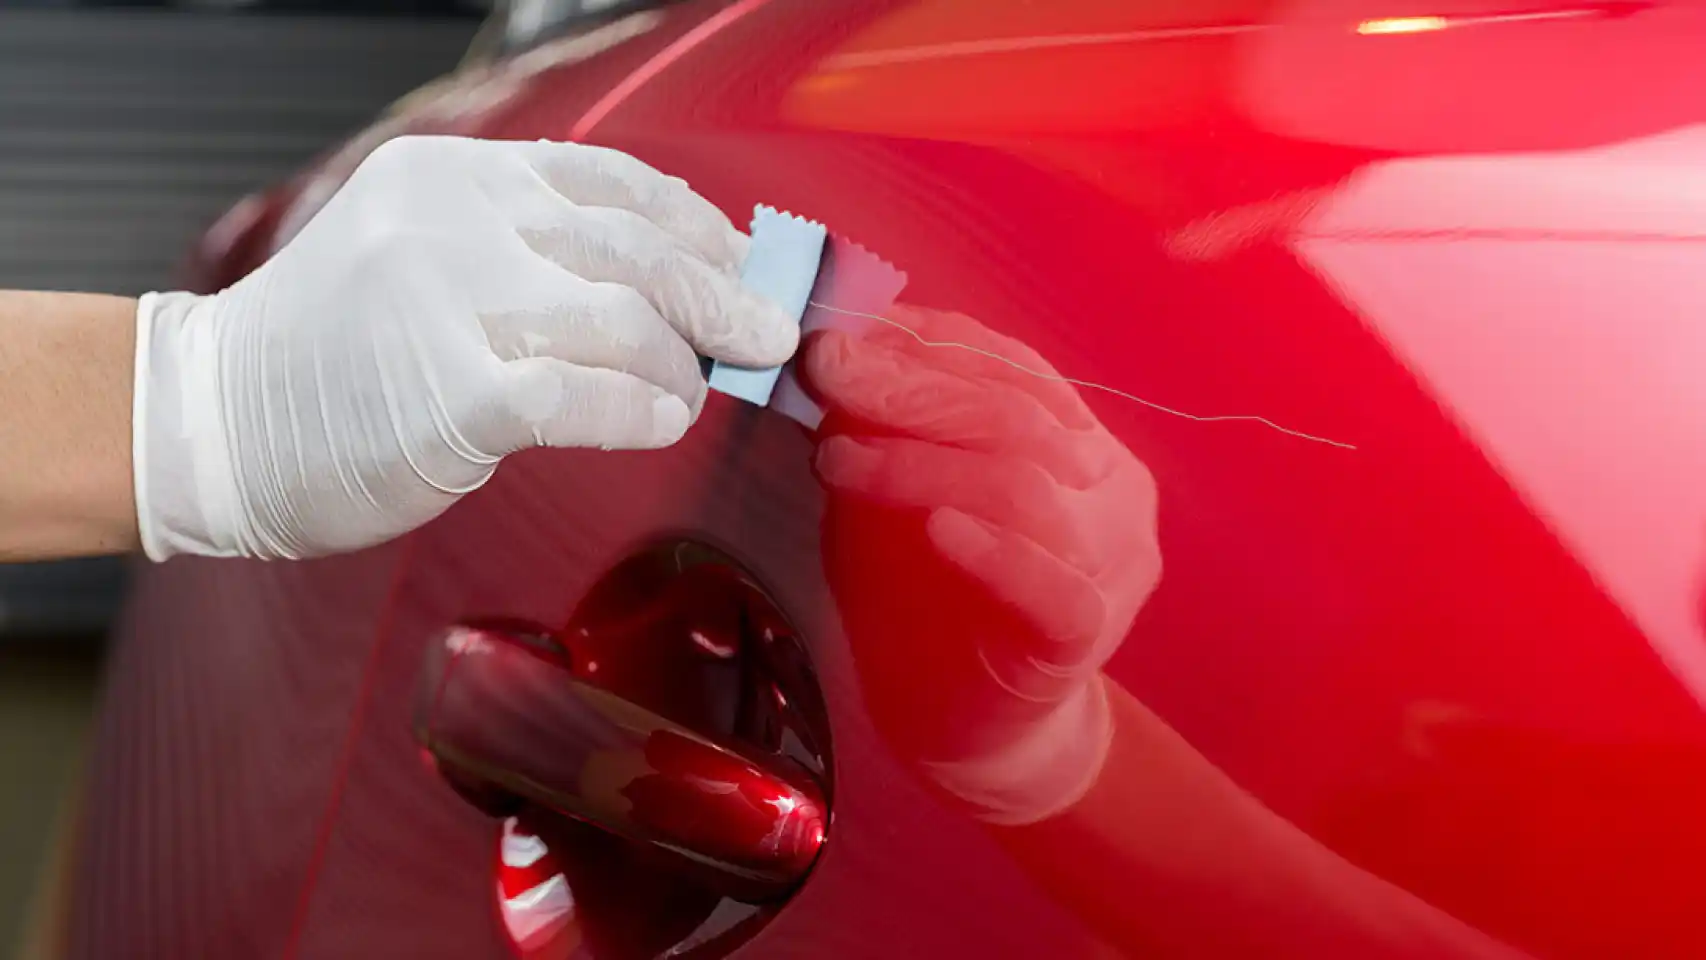 Cómo limpiar los faros del coche? quitar pintura, lijar y barnizar - Sigosan